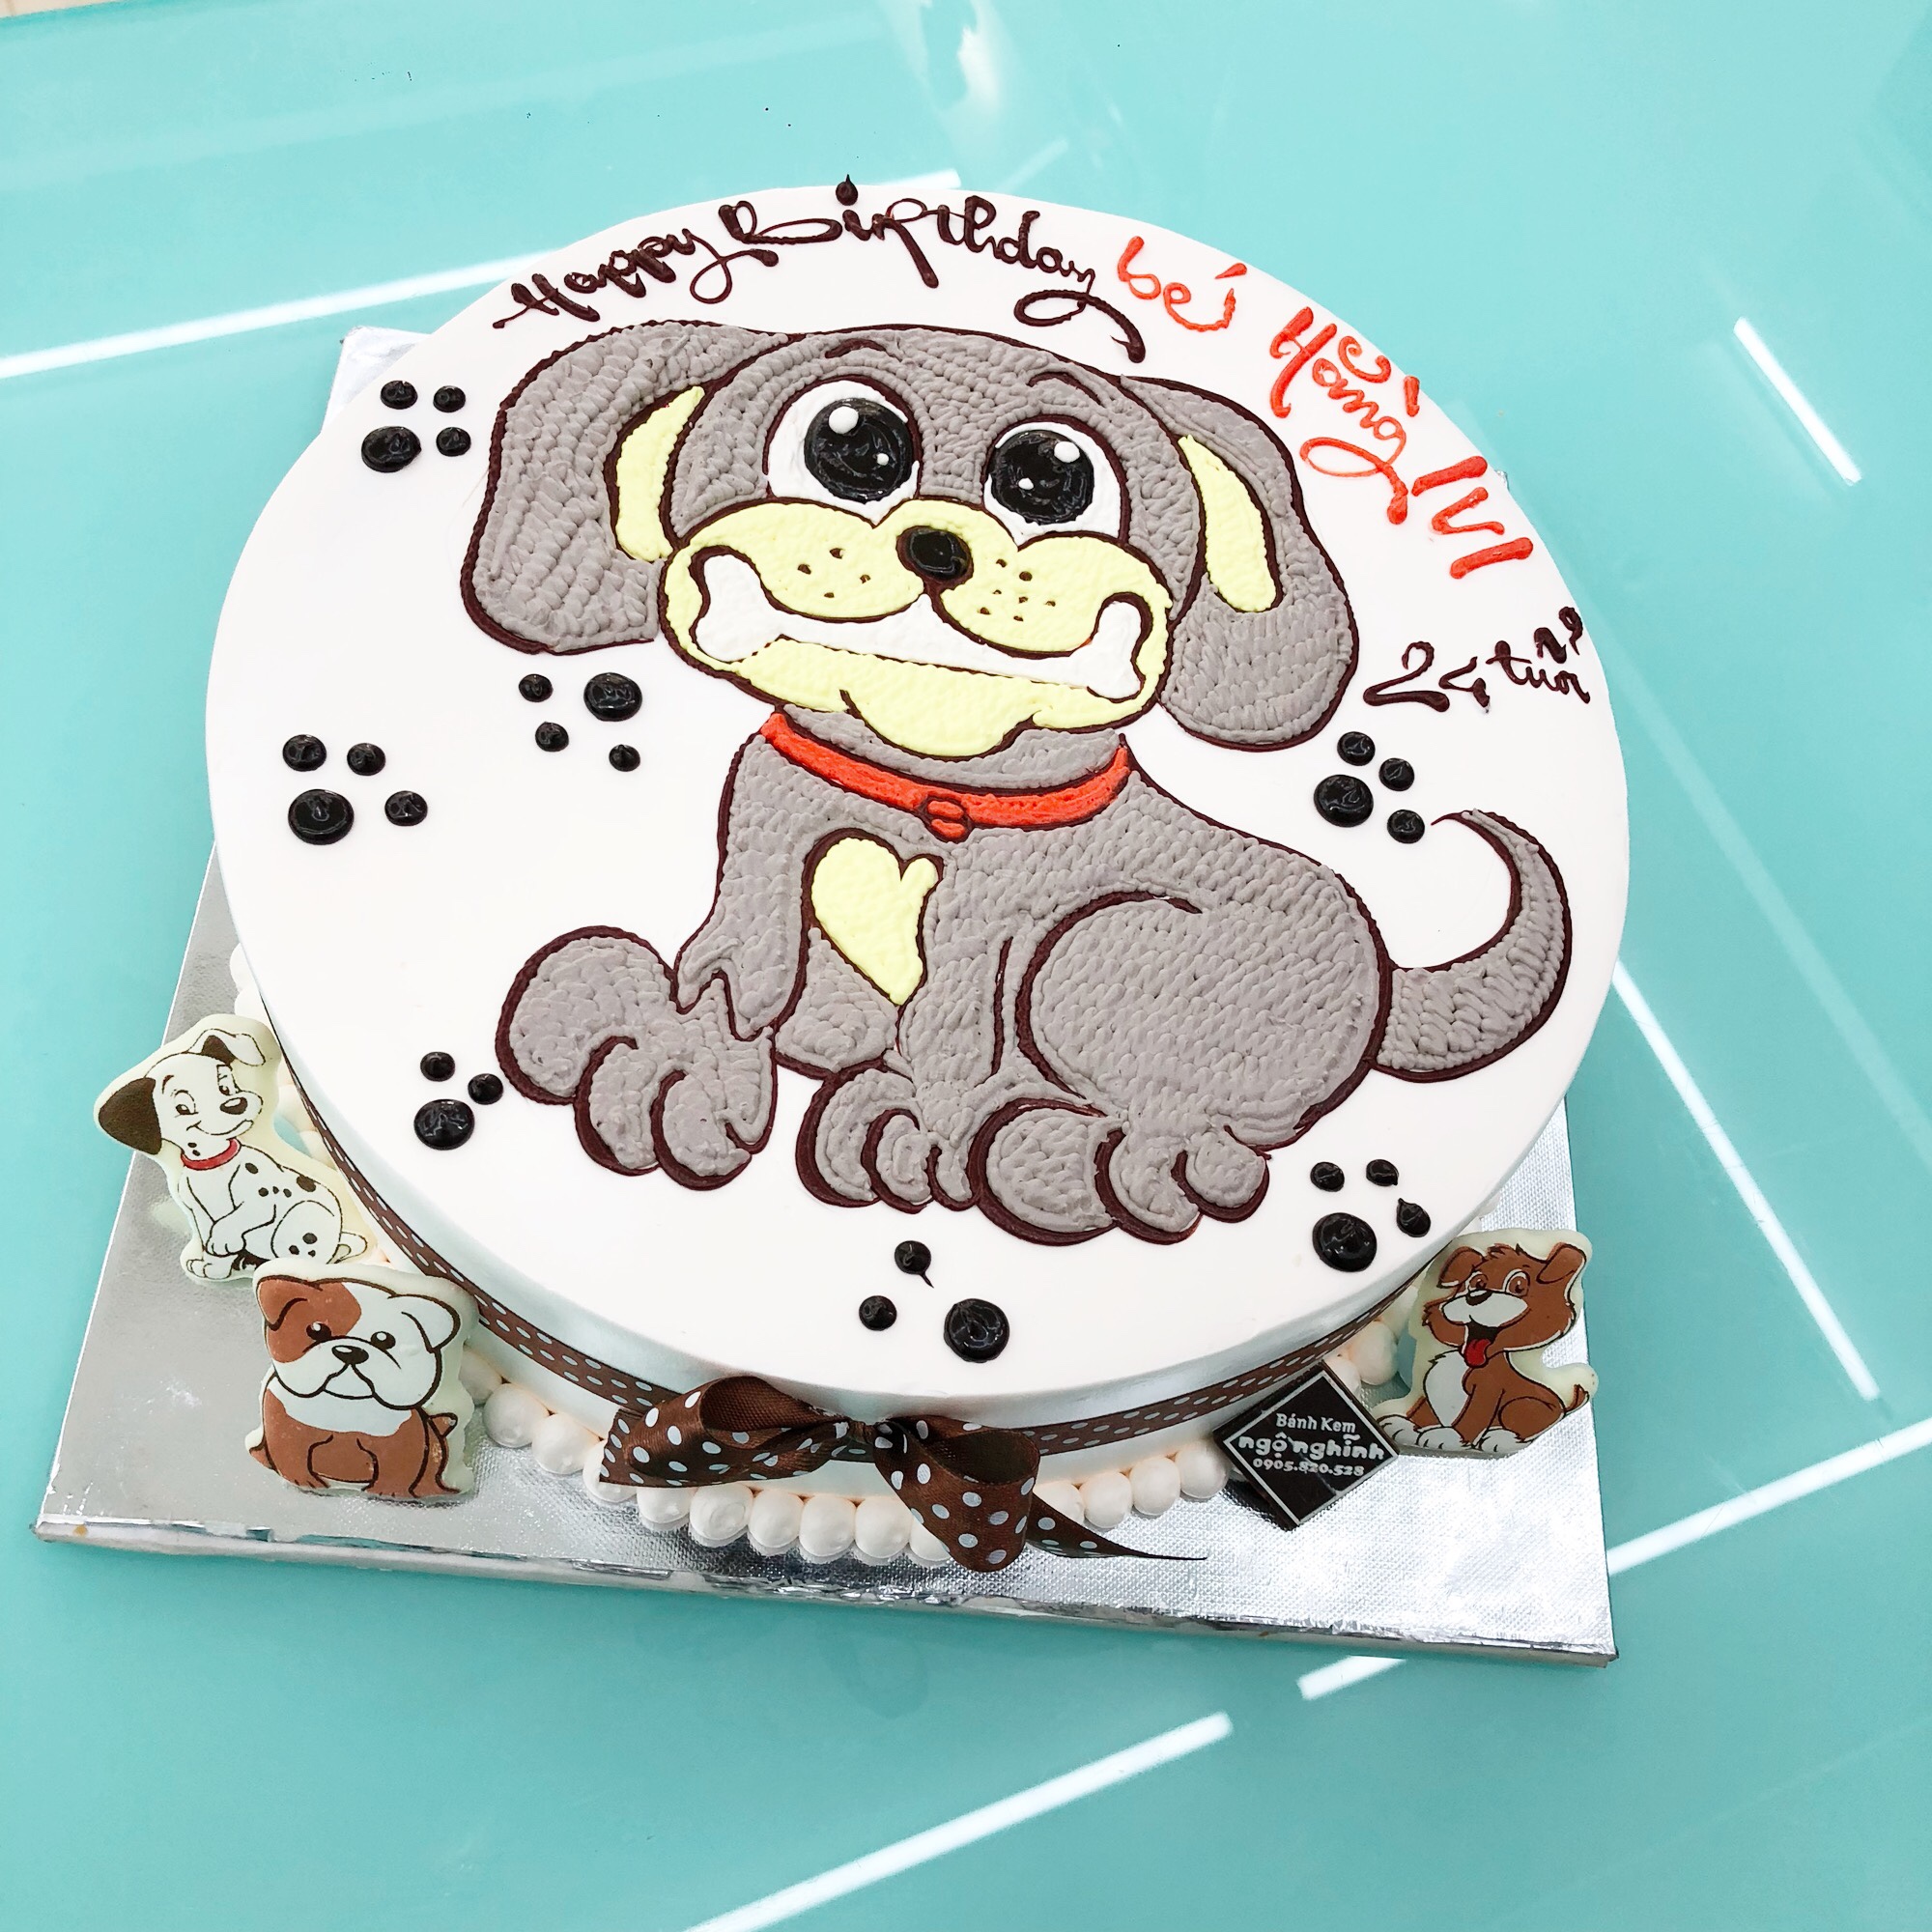 Phát cuồng 10 mẫu bánh kem có hình con chó đáng yêu nhất tuổi Tuất  Bánh  kem hương vị Việt  Banhngotvn